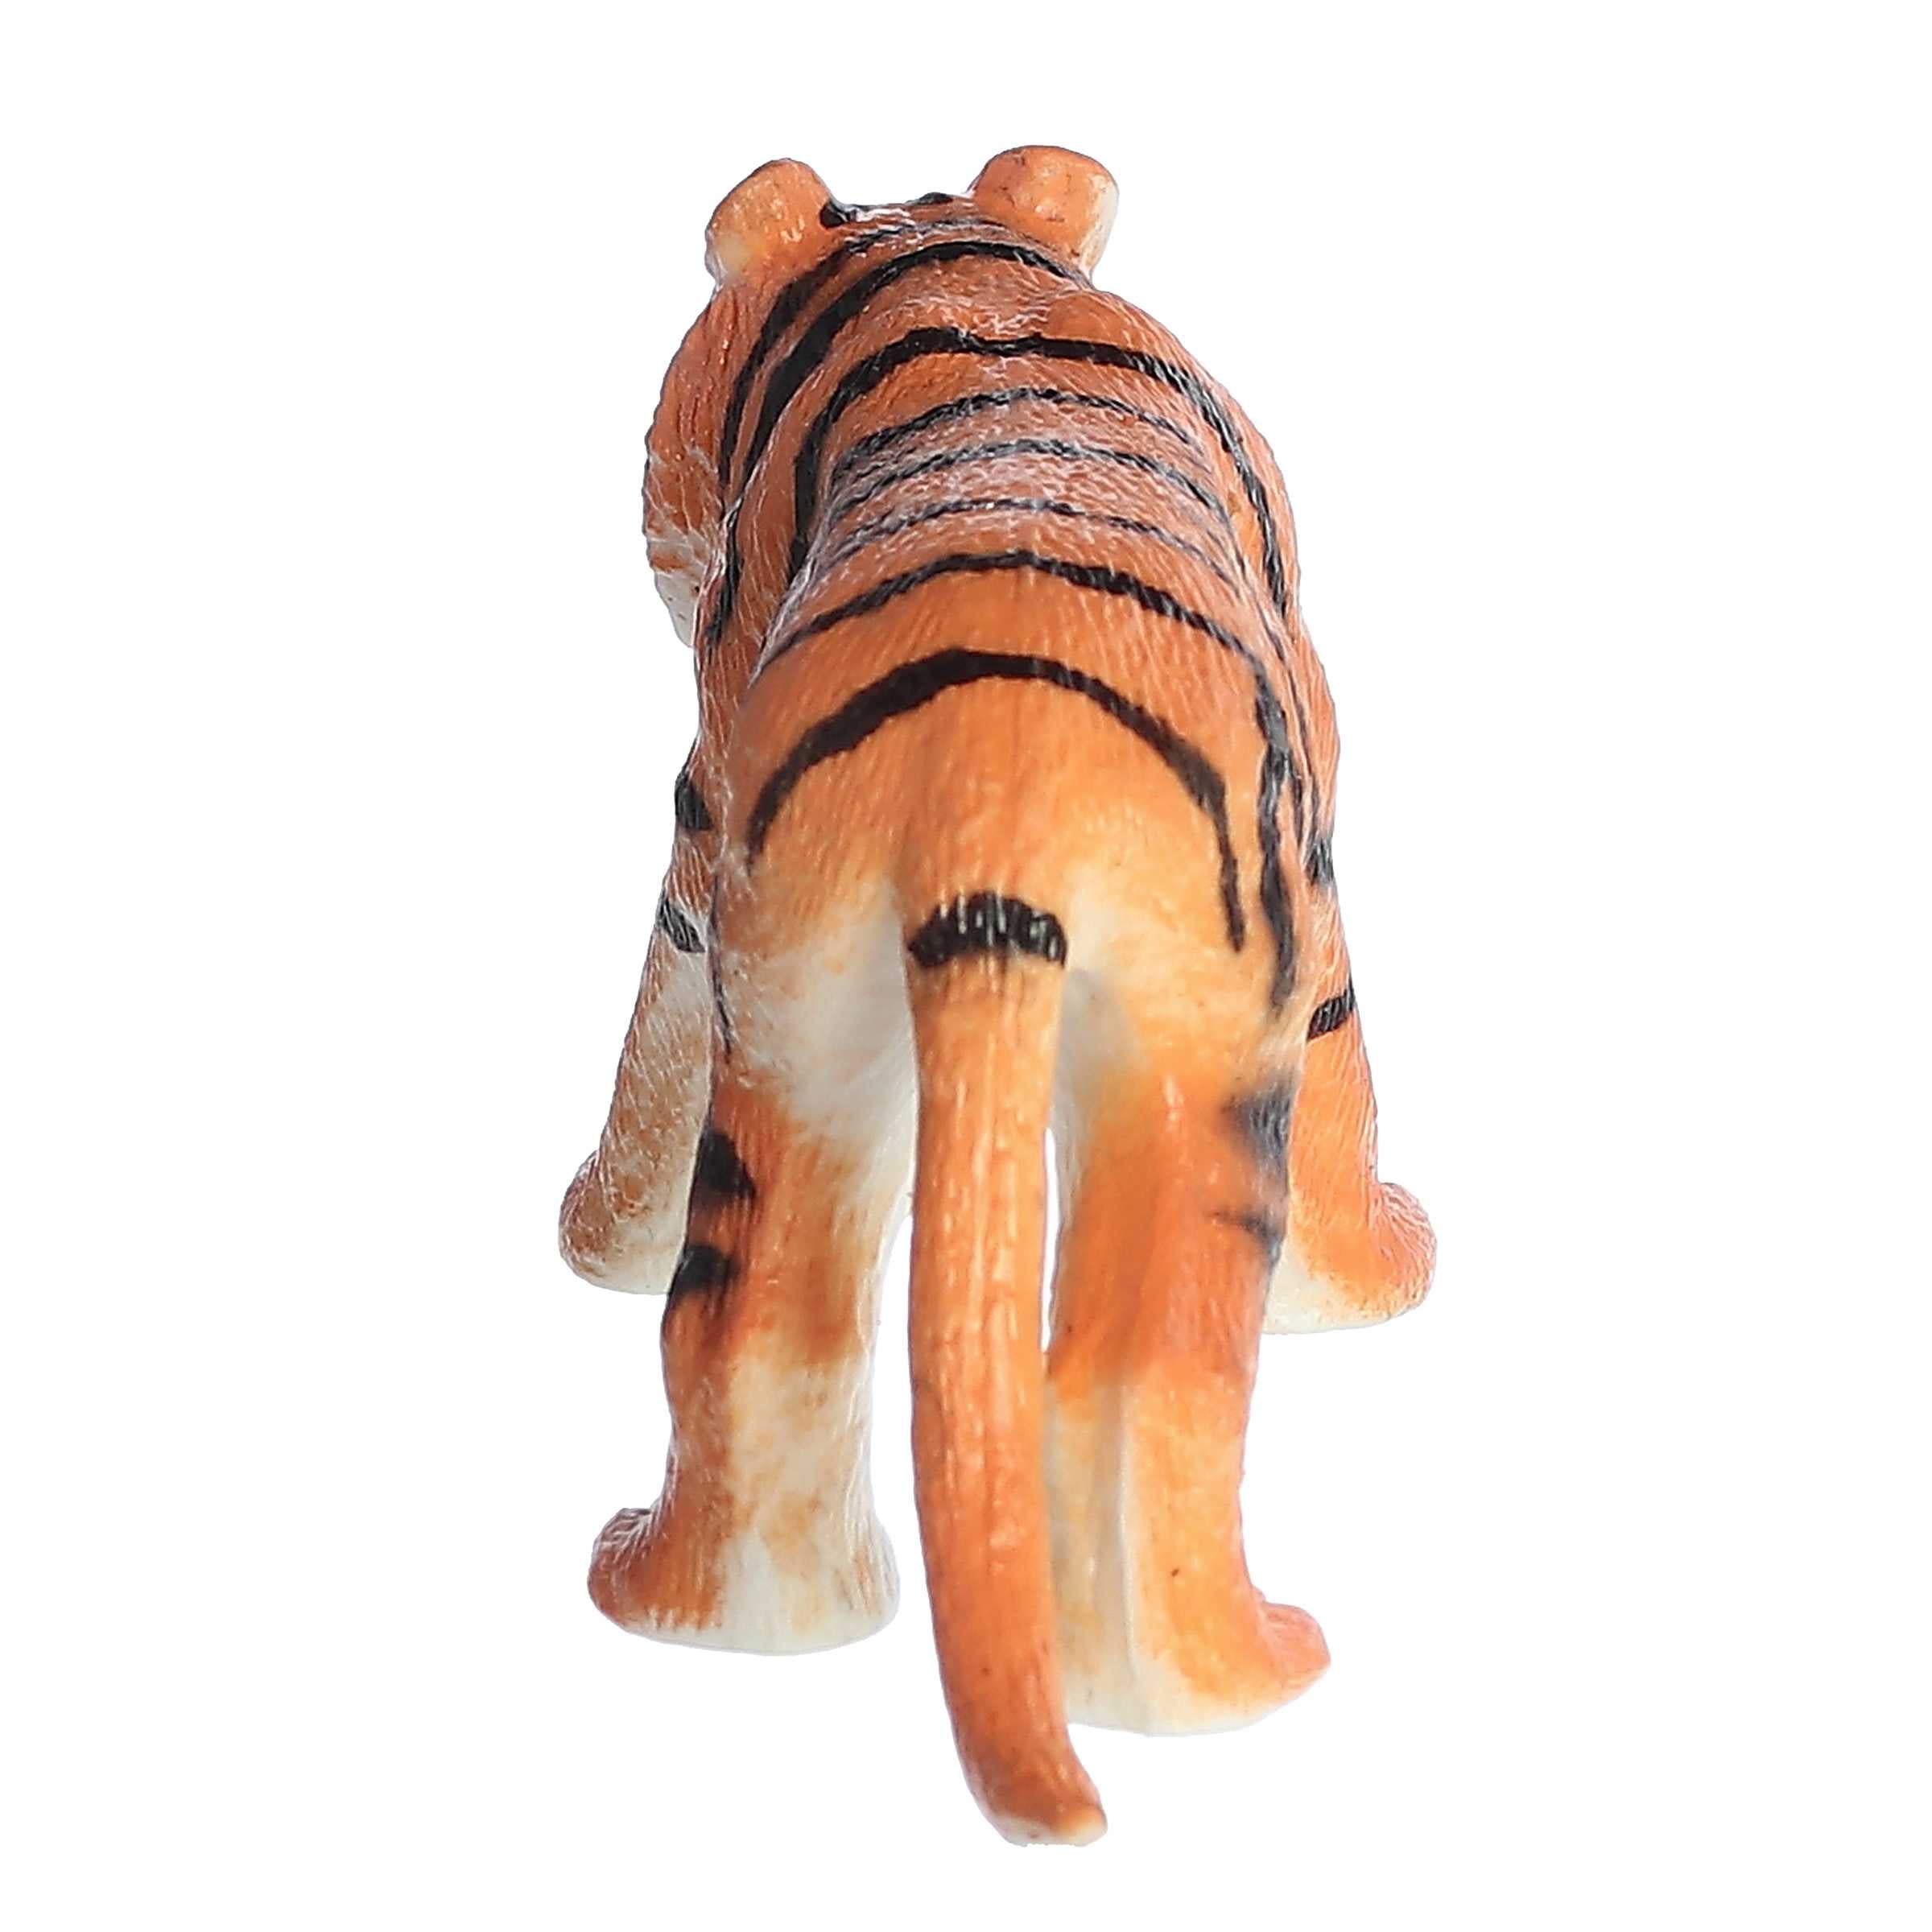 Aurora® Toys - Habitat™ - Tiger Squish Animal